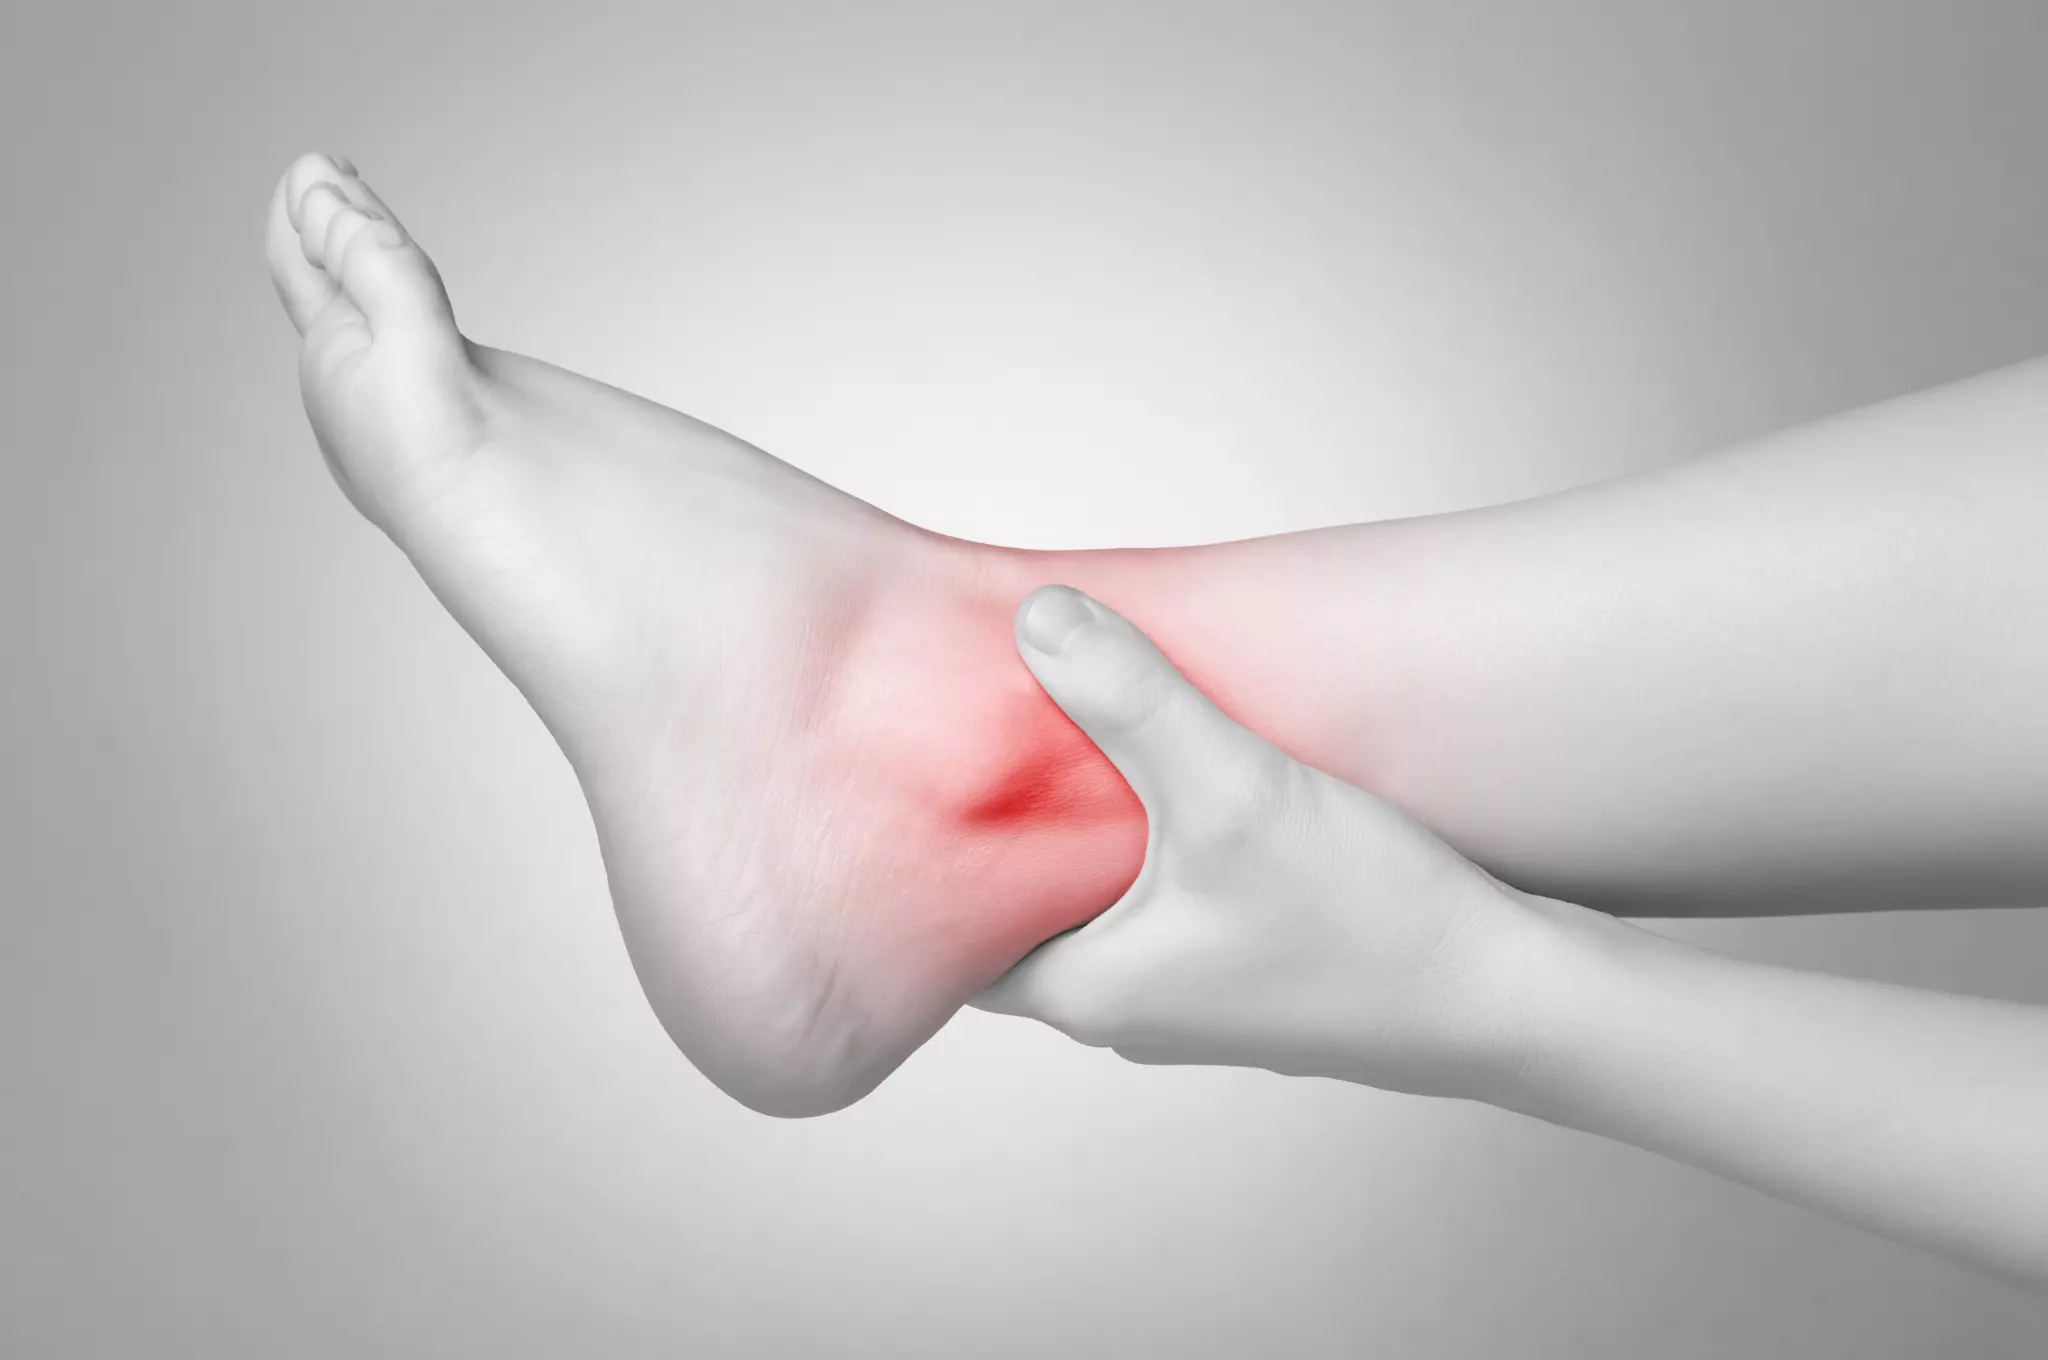 Thoái hóa khớp cổ chân ảnh hưởng đến hoạt động hàng ngày